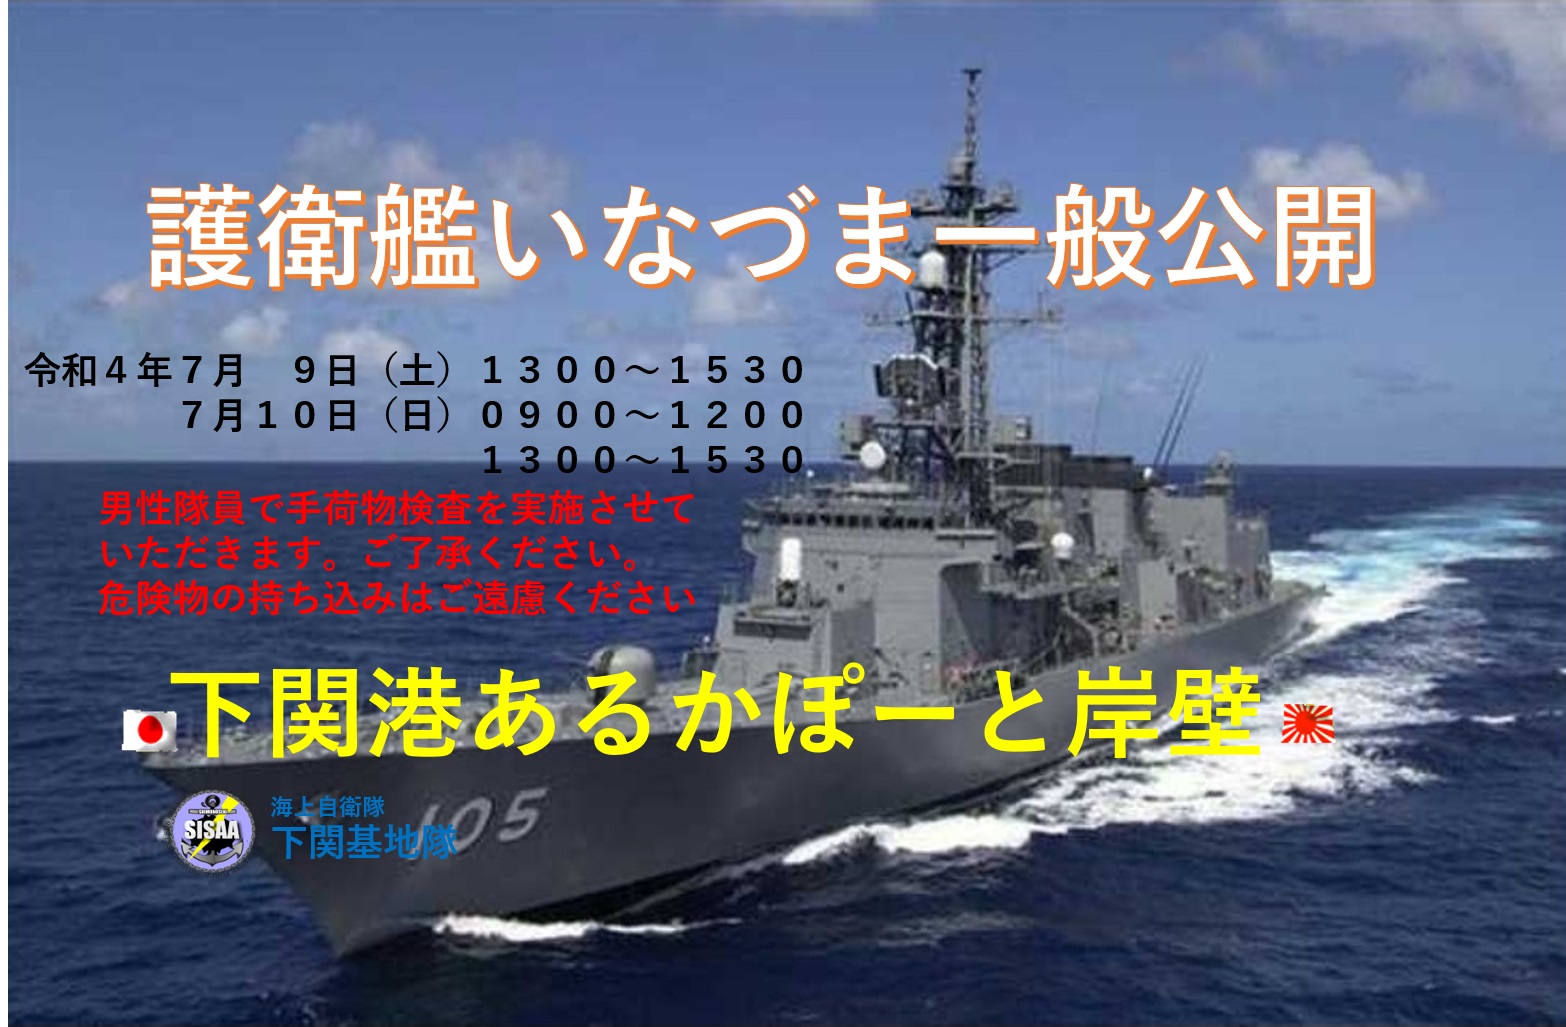 護衛艦「いなづま」一般公開 in 下関港あるかぽーと岸壁ポスター